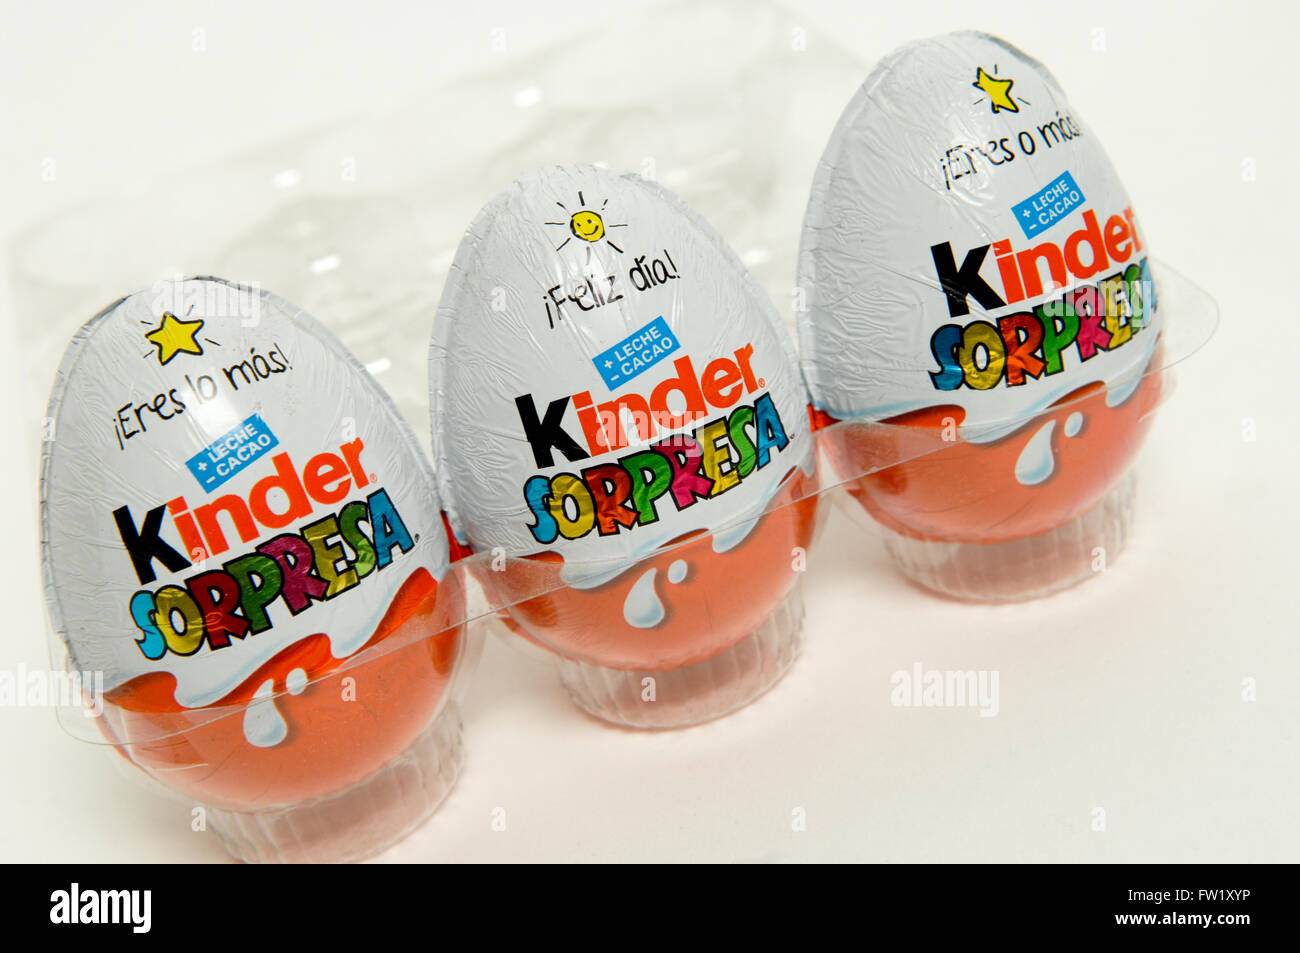 Kinder sorpresa, noto anche come un Uovo Kinder fabbricati dalla società italiana di Ferrero presi su sfondo bianco. Foto Stock